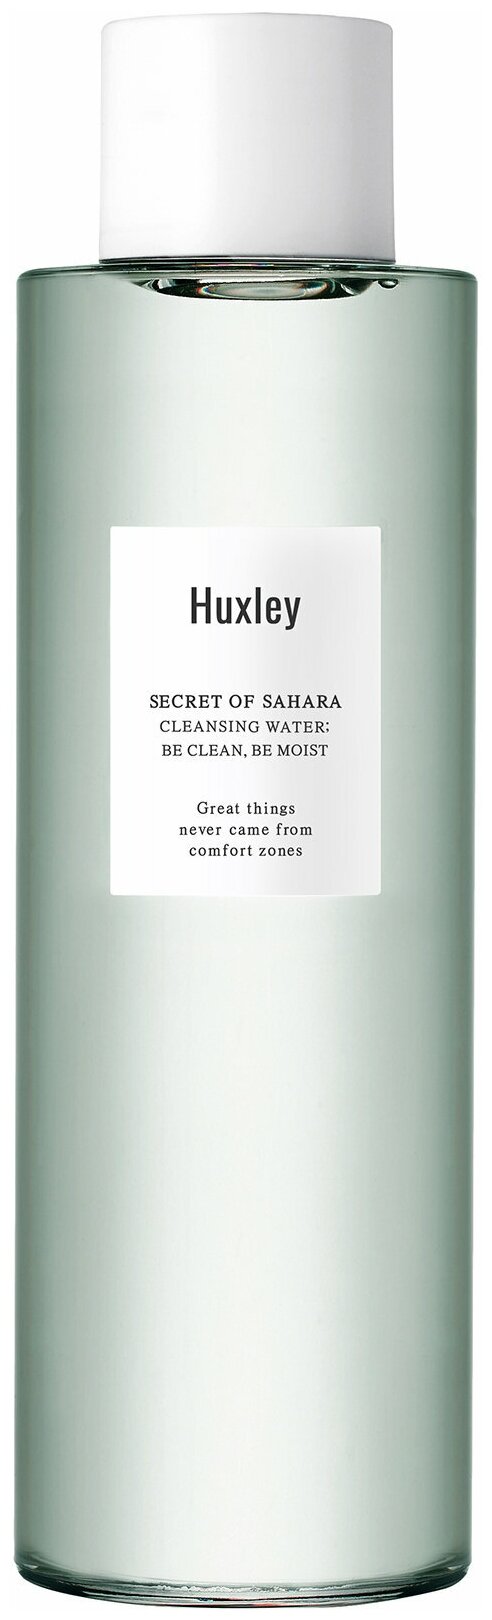 Huxley вода очищающая для снятия макияжа Be Clean, Be Moist, 200 мл